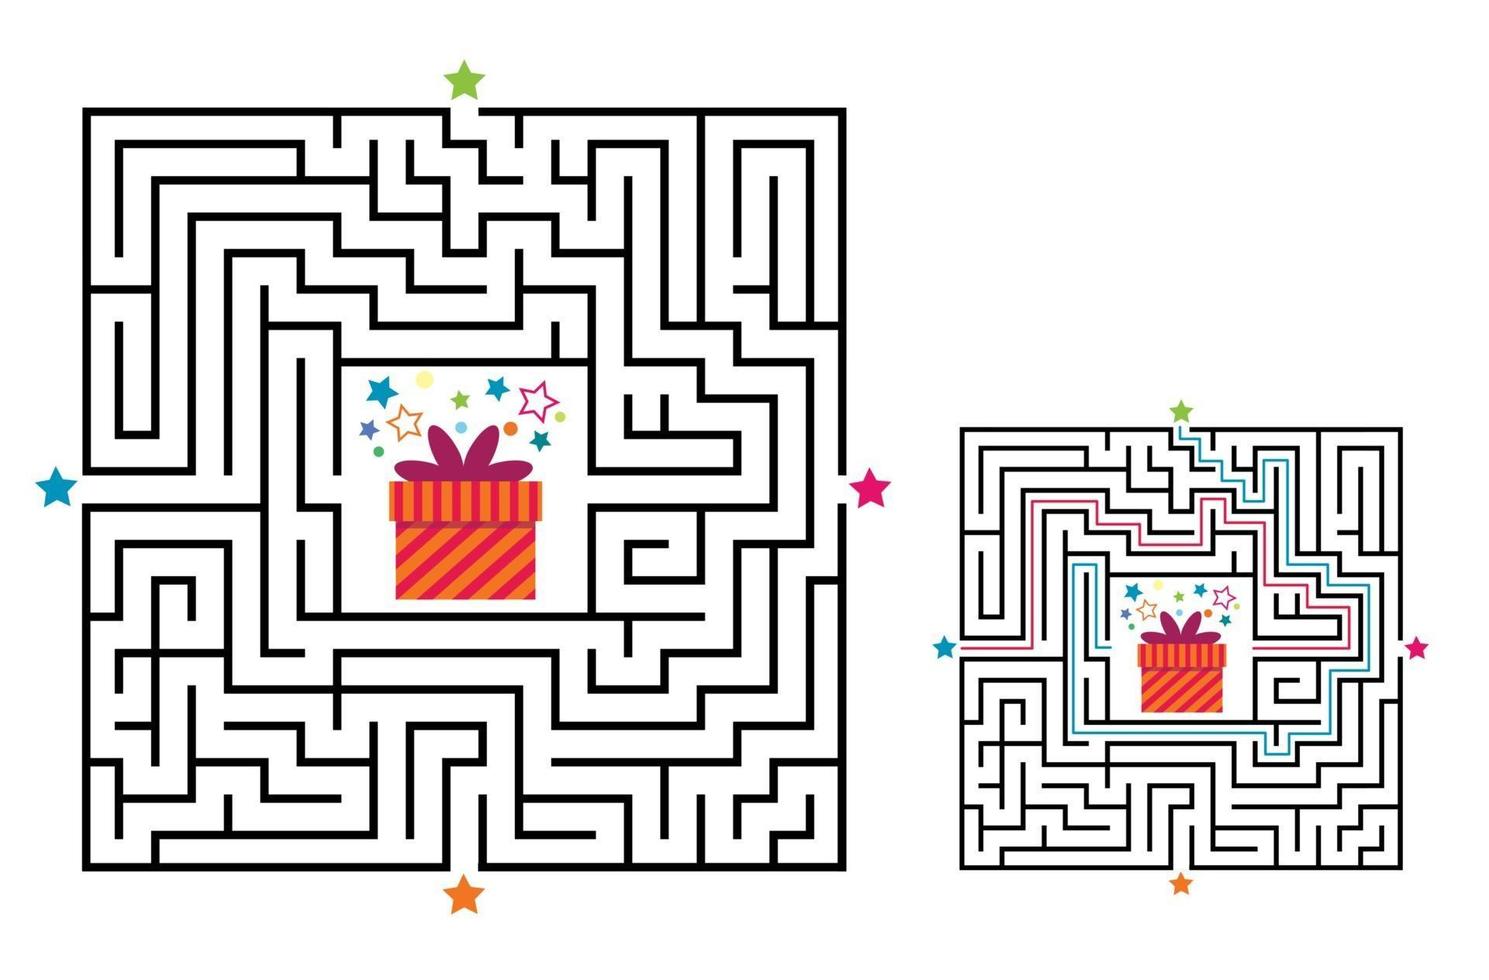 vierkant doolhof labyrint spel voor kinderen. labyrint logisch raadsel. vector